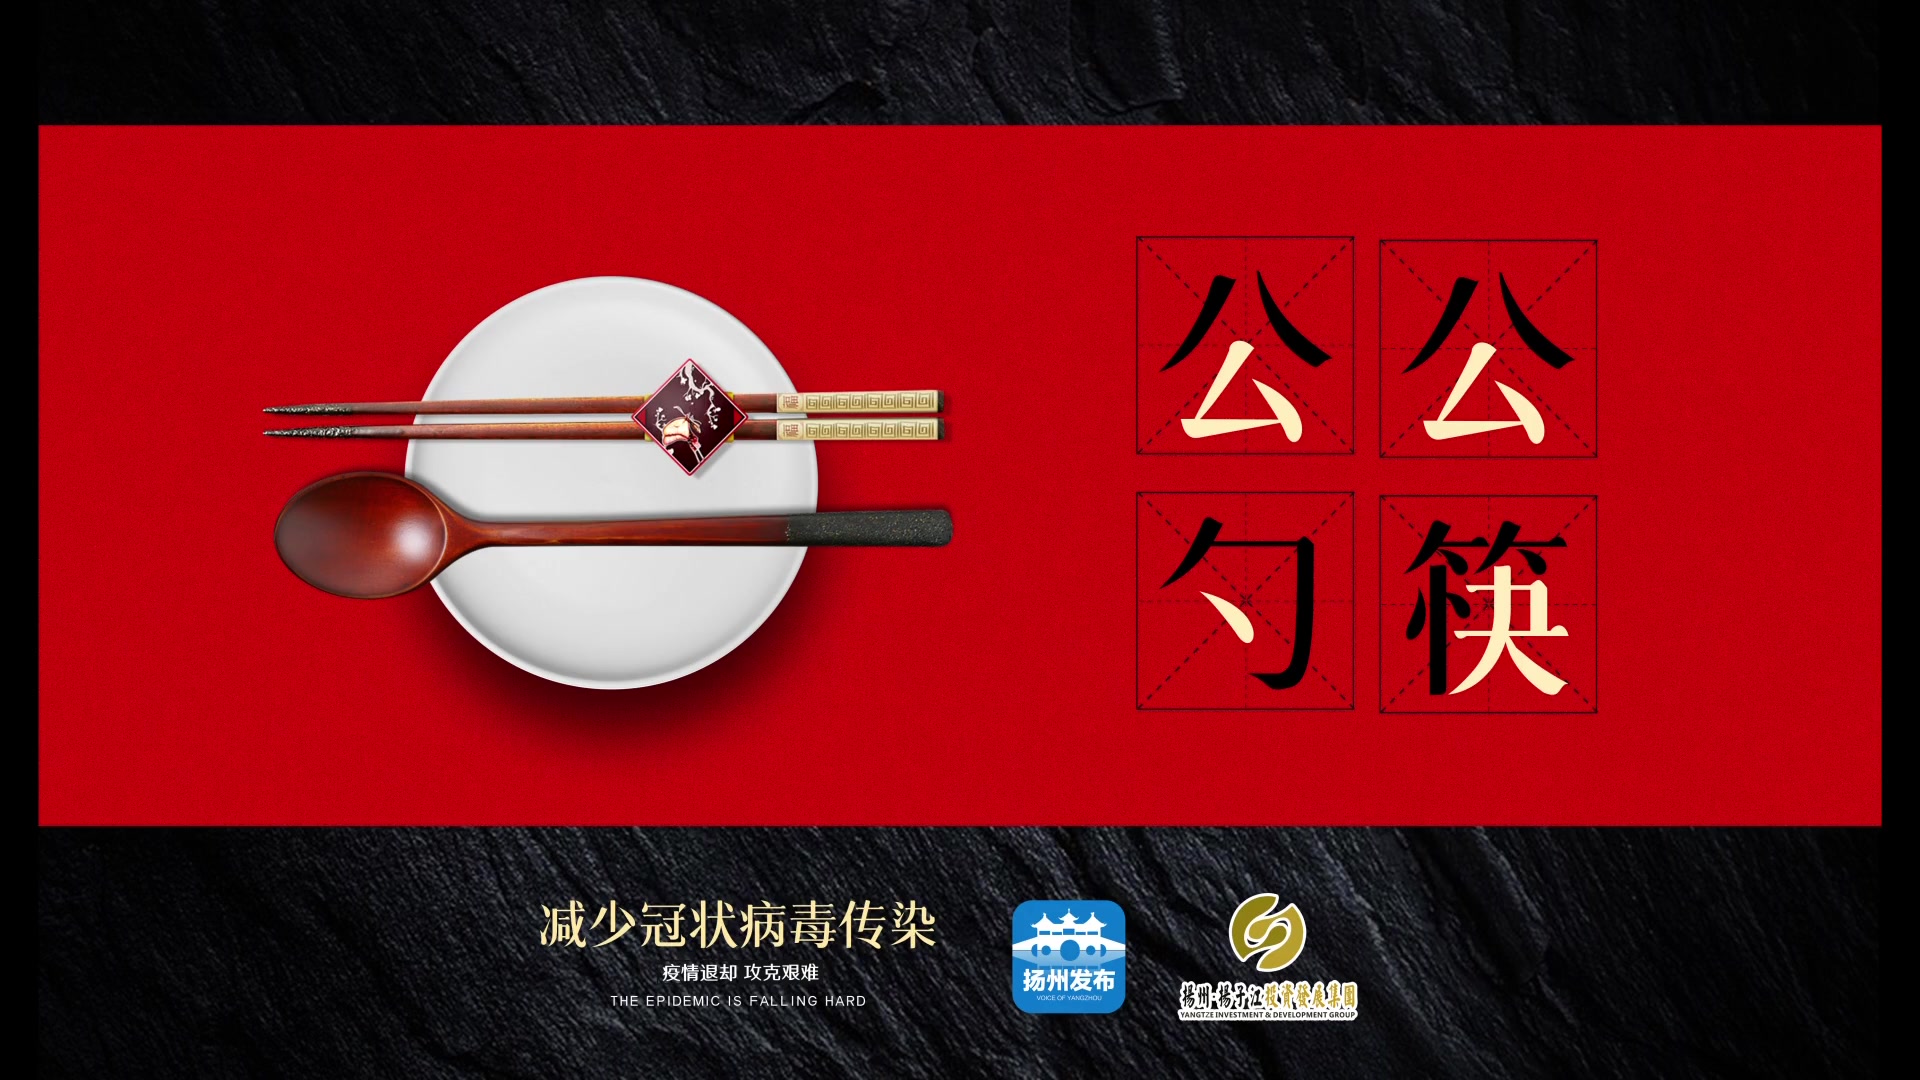 公筷公勺公益视频:在外用餐,这个礼仪你注意到了吗?